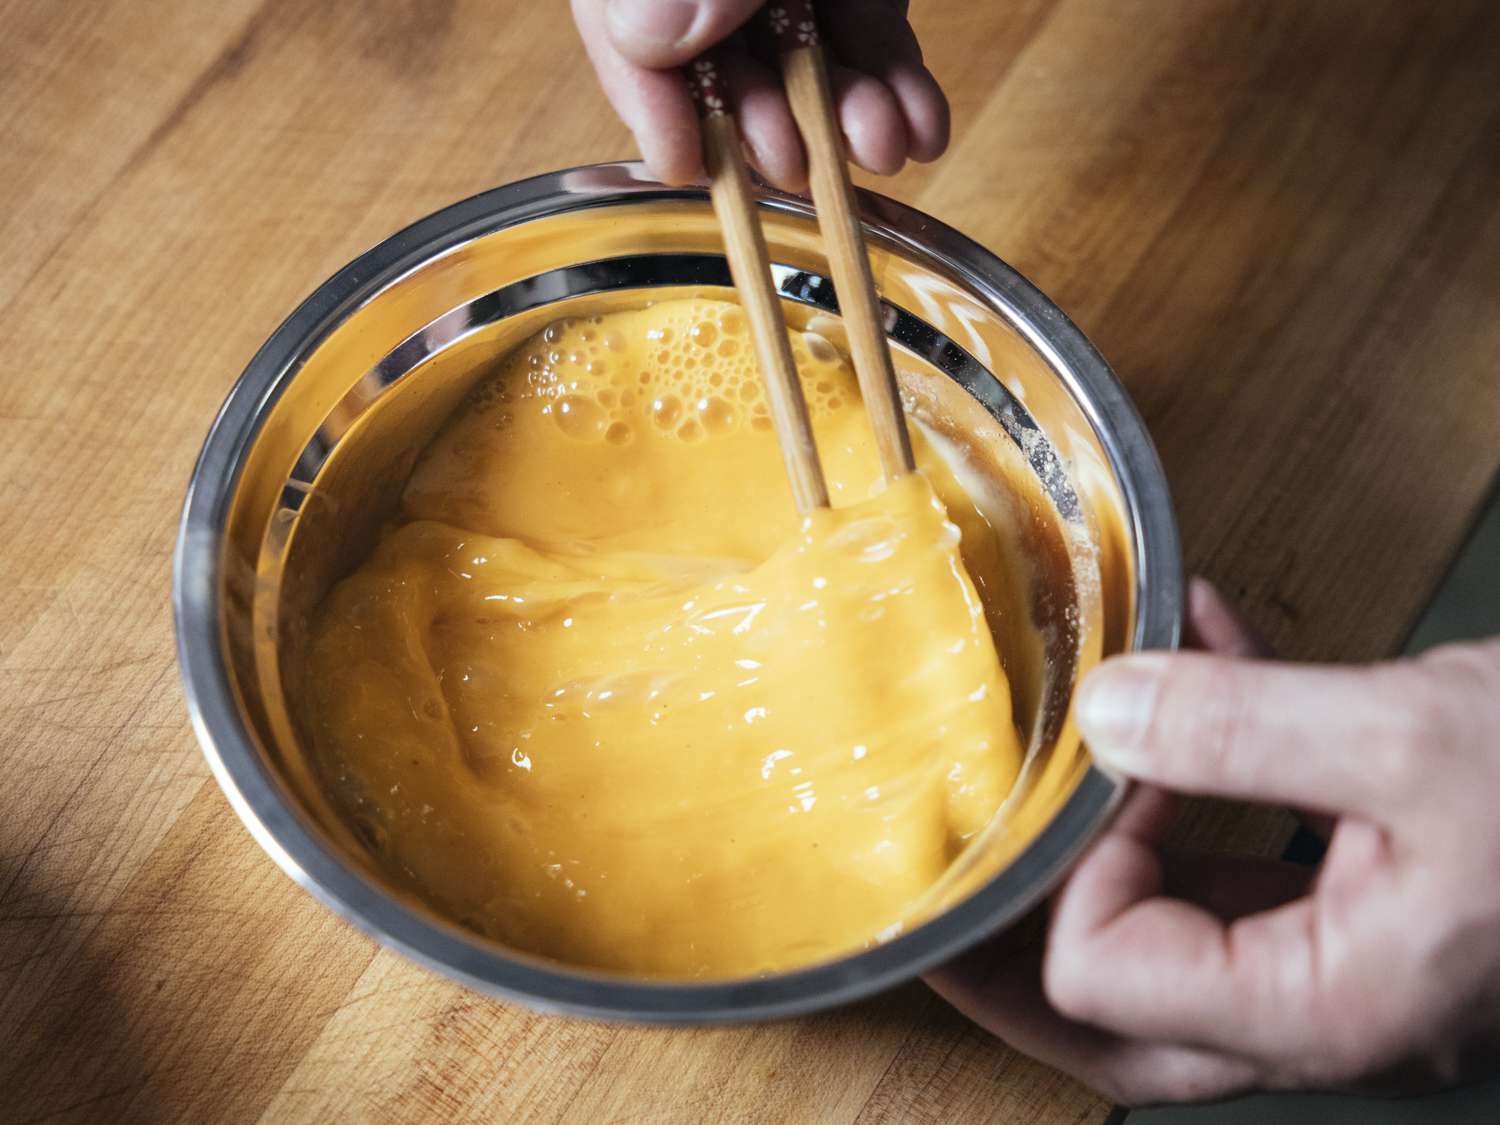 用筷子把玉米淀粉和鸡蛋放在一个金属碗里搅拌均匀。